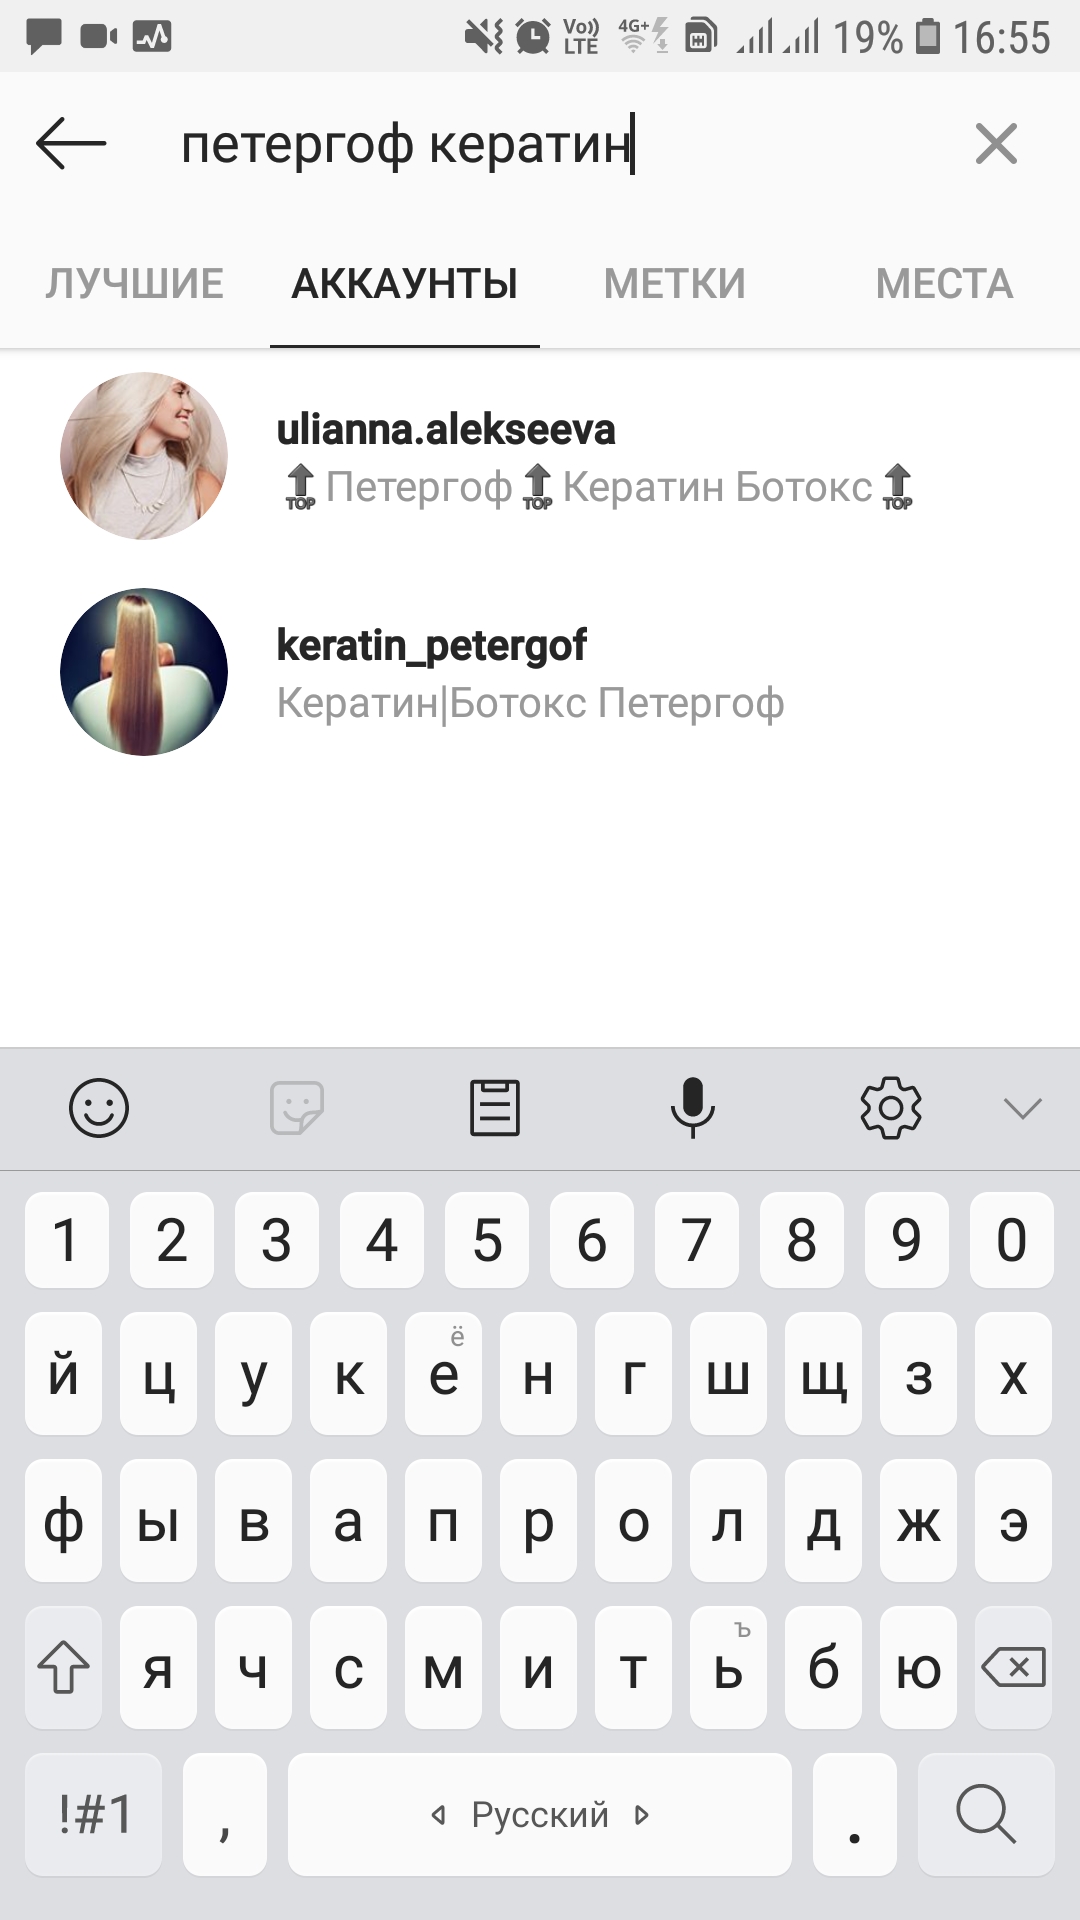 Нужна помощь с шапкой профиля, Ulianna_spb, 9 июл 2019, 20:22, Screenshot_20190709-165525_Instagram.jpg